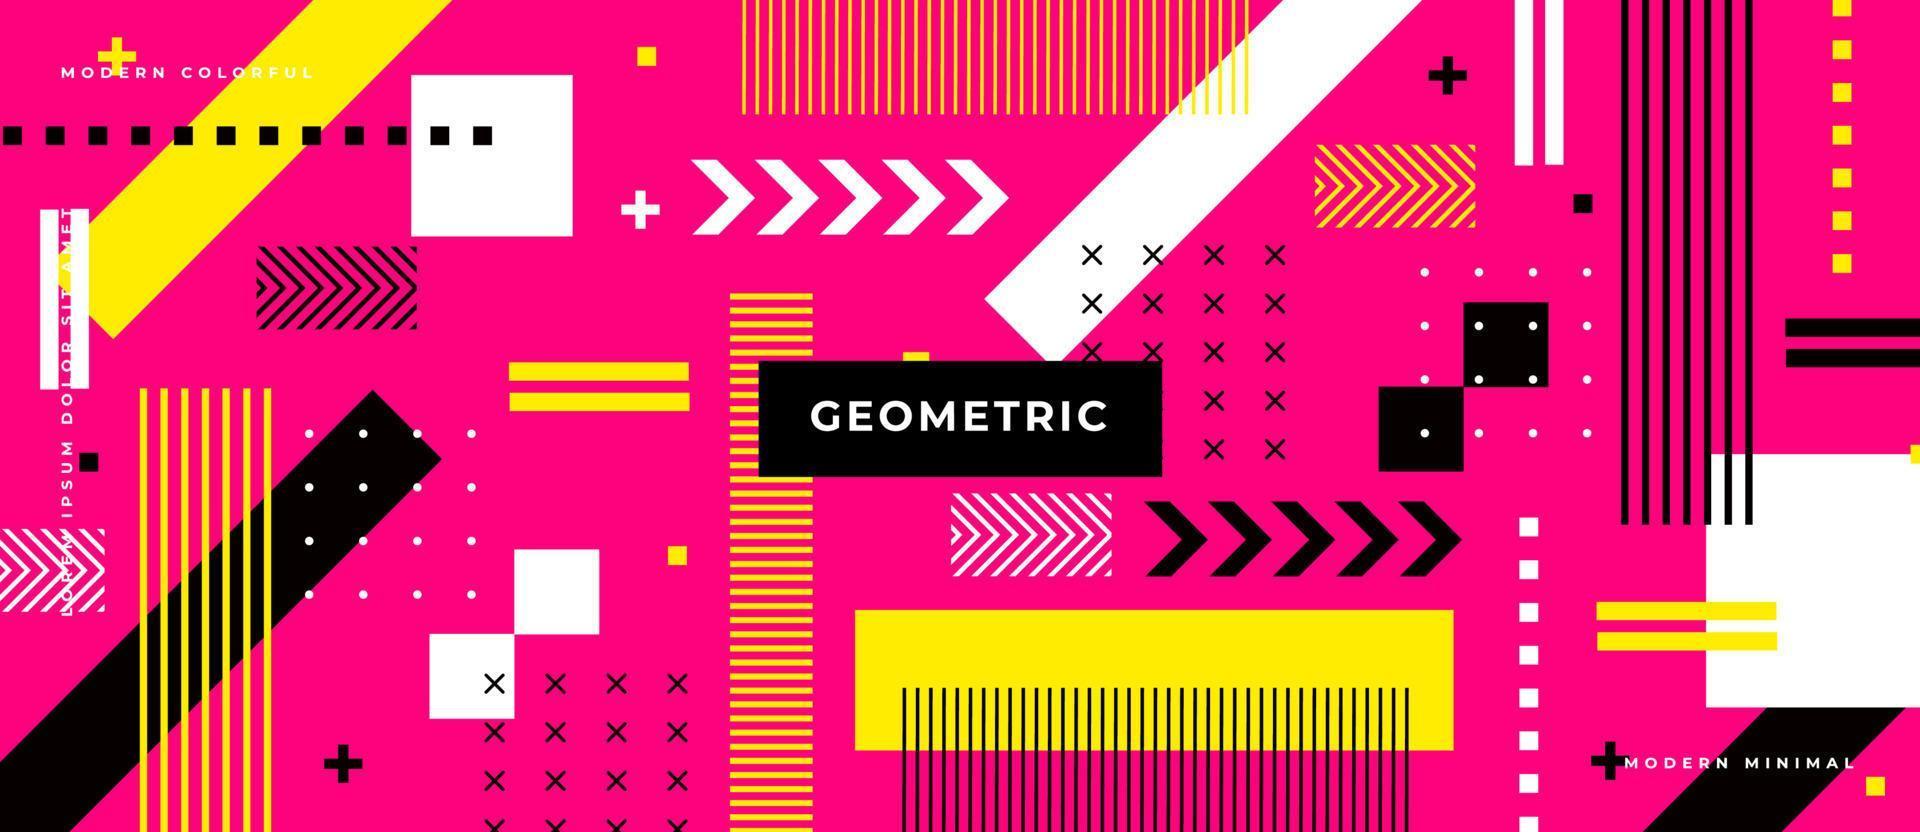 helle bunte flache Form auf neonrosa Hintergrund. mit Memphis-Stil und geometrischen Formen, Linie, Punkt, quadratischem Musterkonzept. vektor